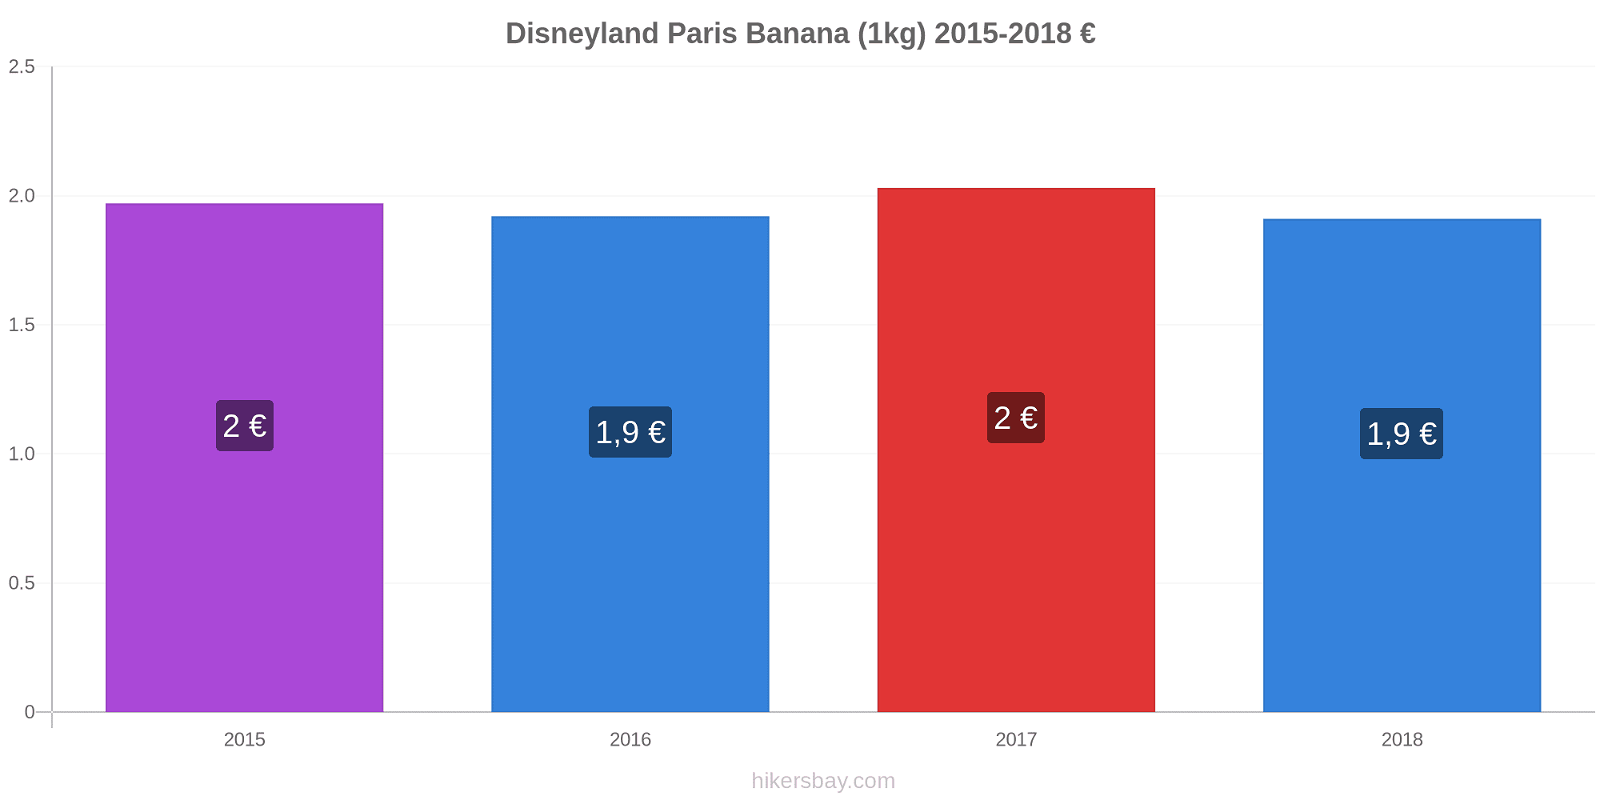 Disneyland Paris variazioni di prezzo Banana (1kg) hikersbay.com